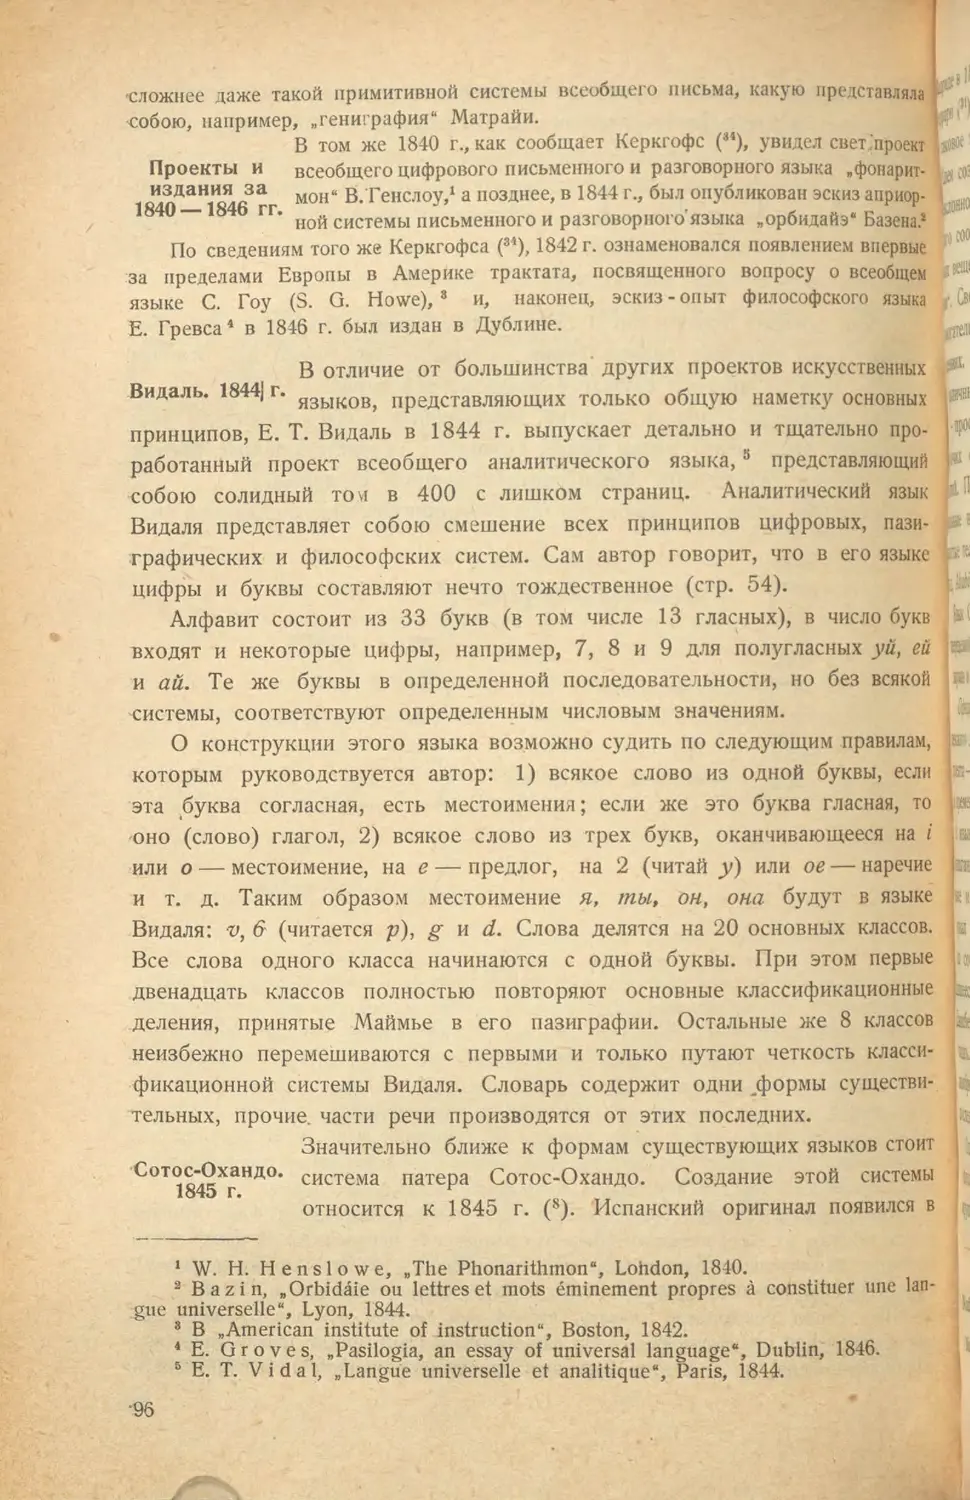 Проекты и издания за 1840-1846 гг
Сотос-Охандо. 1845